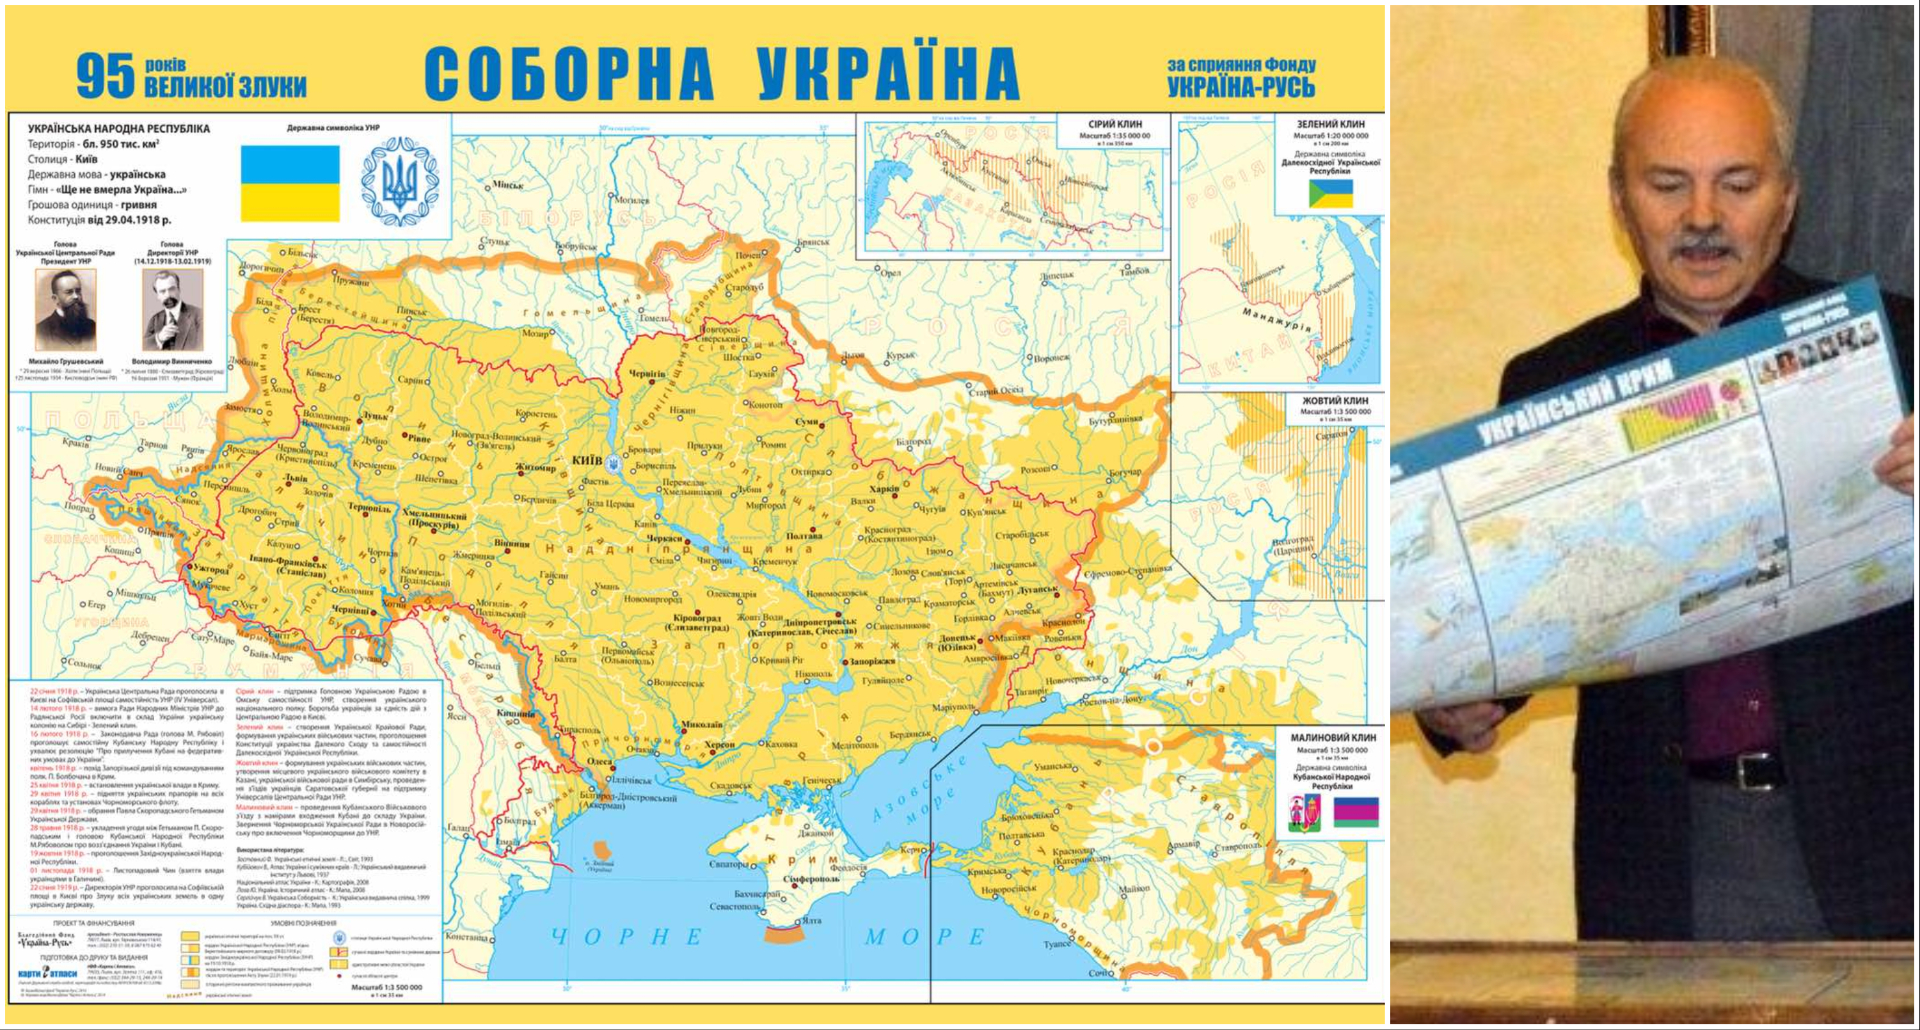 Пізнаємо українську історію через науково-популярні мапи